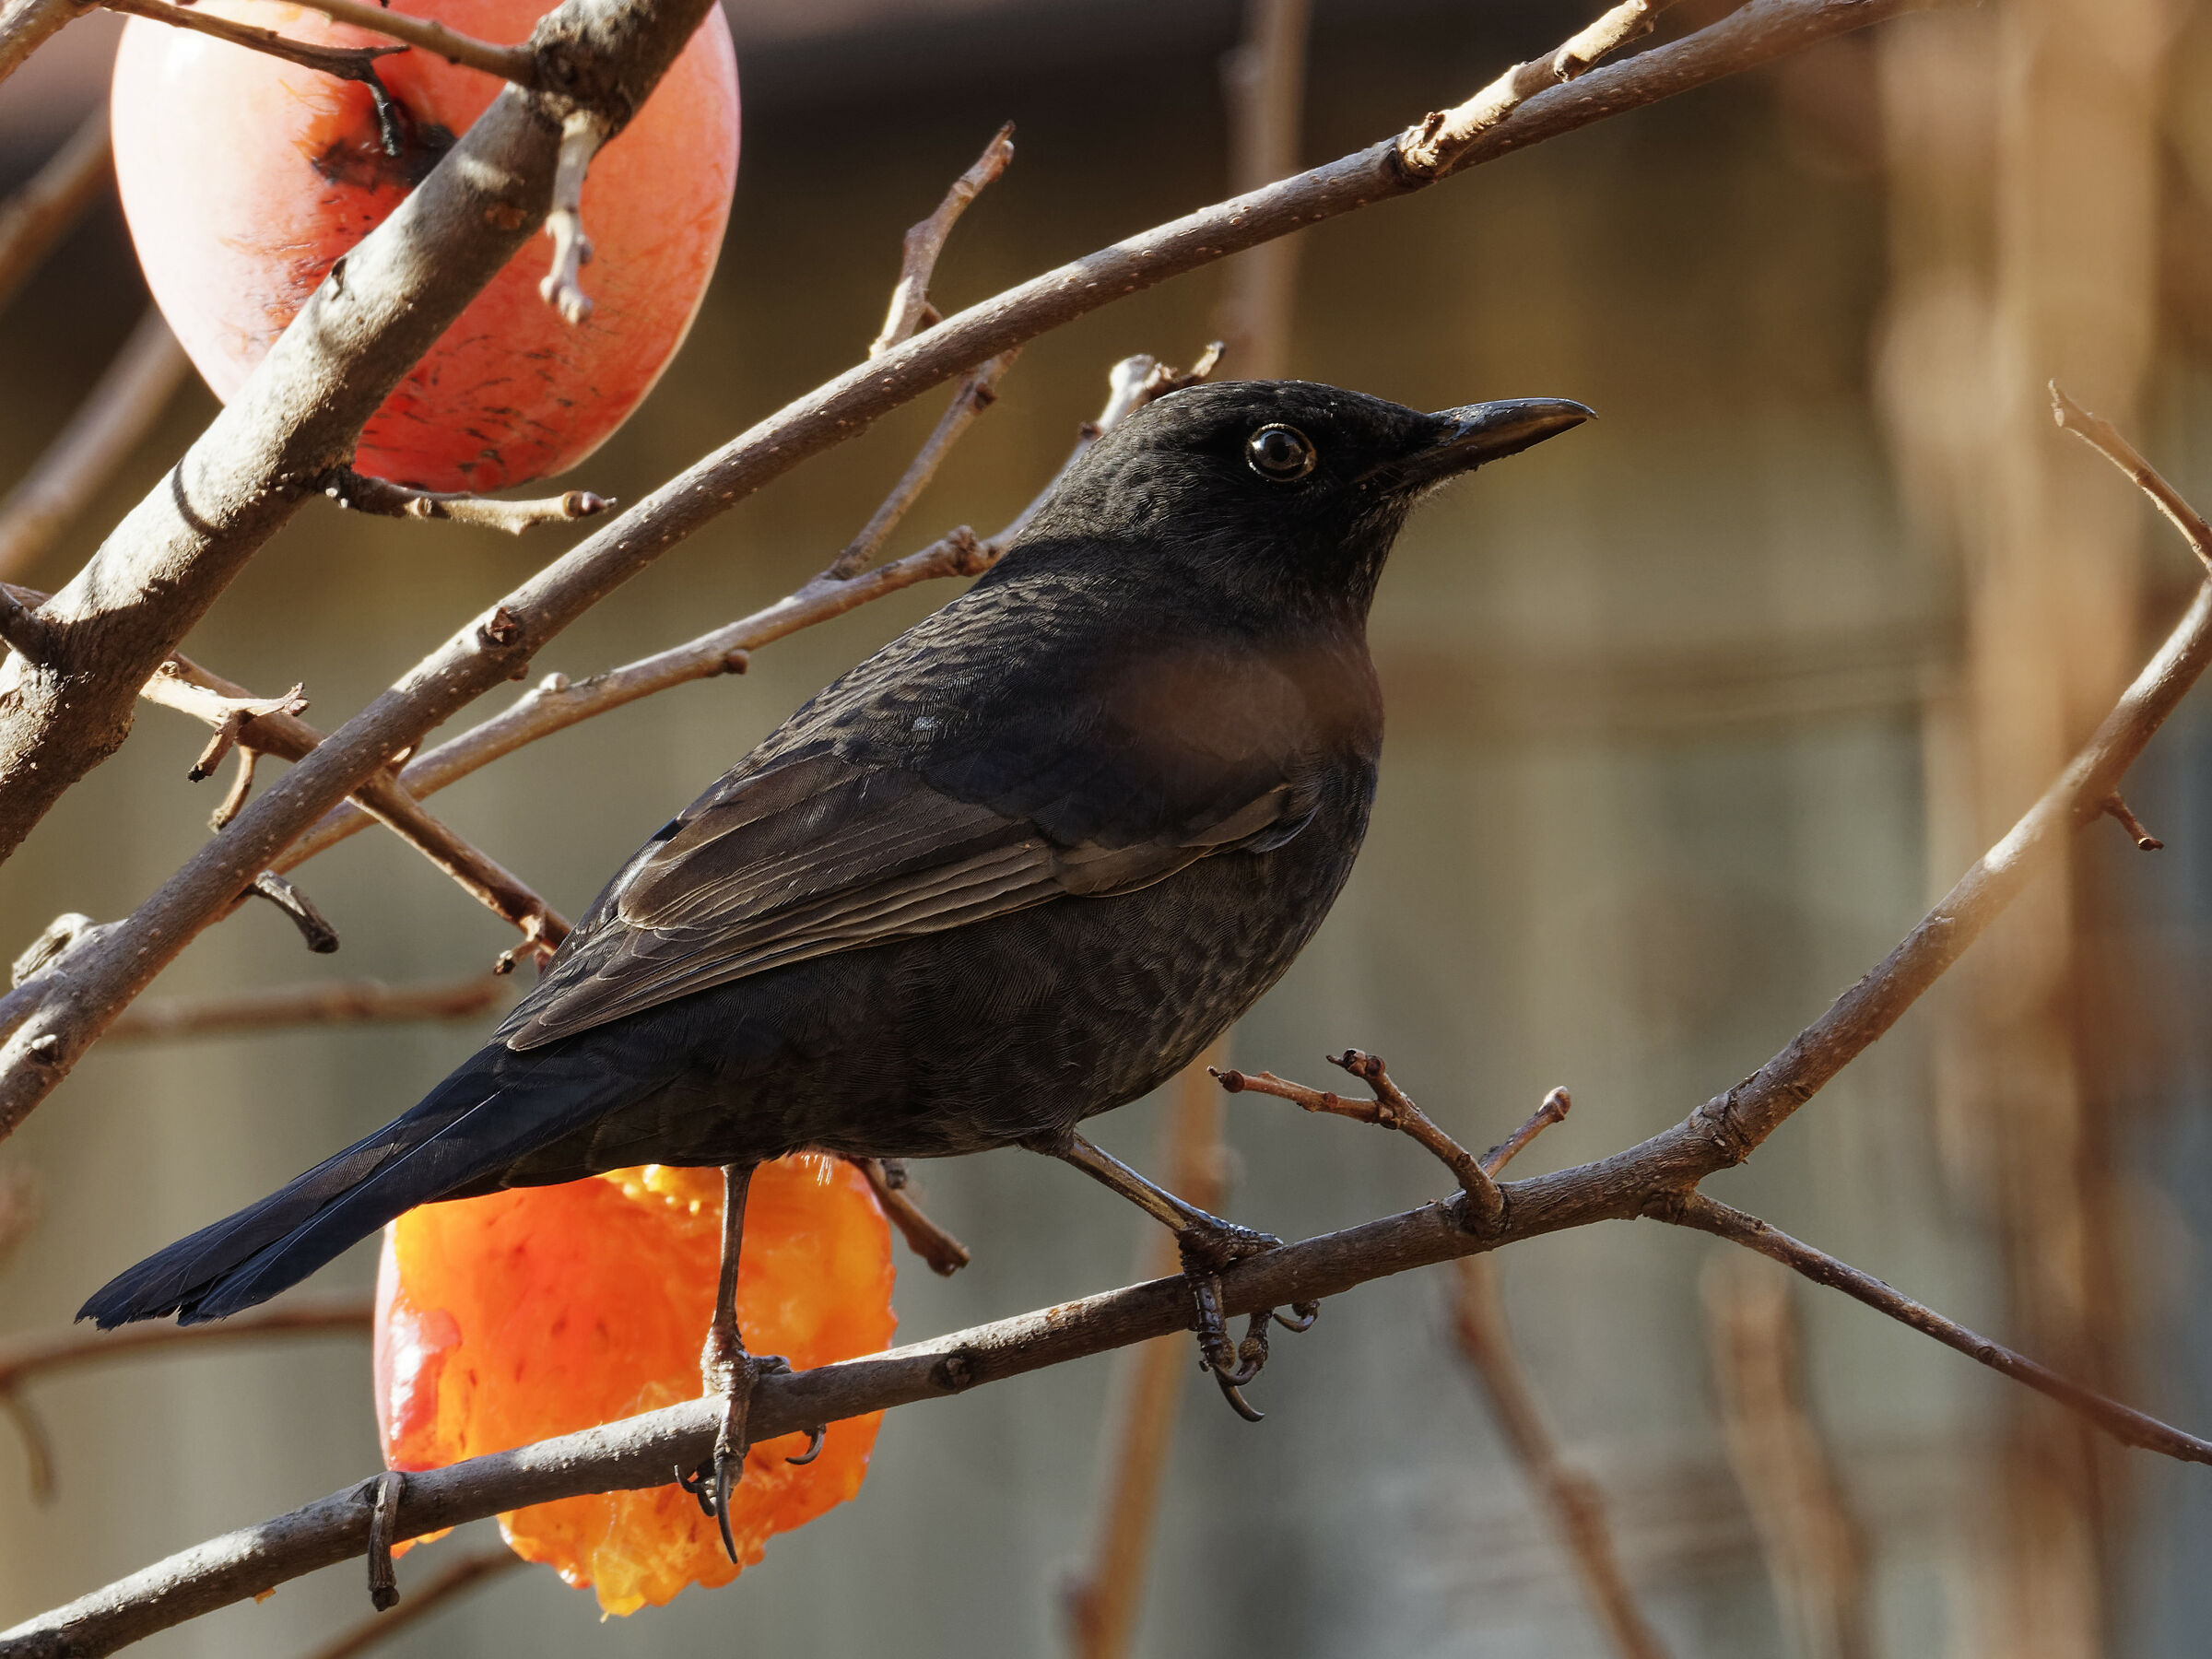 Young blackbird...